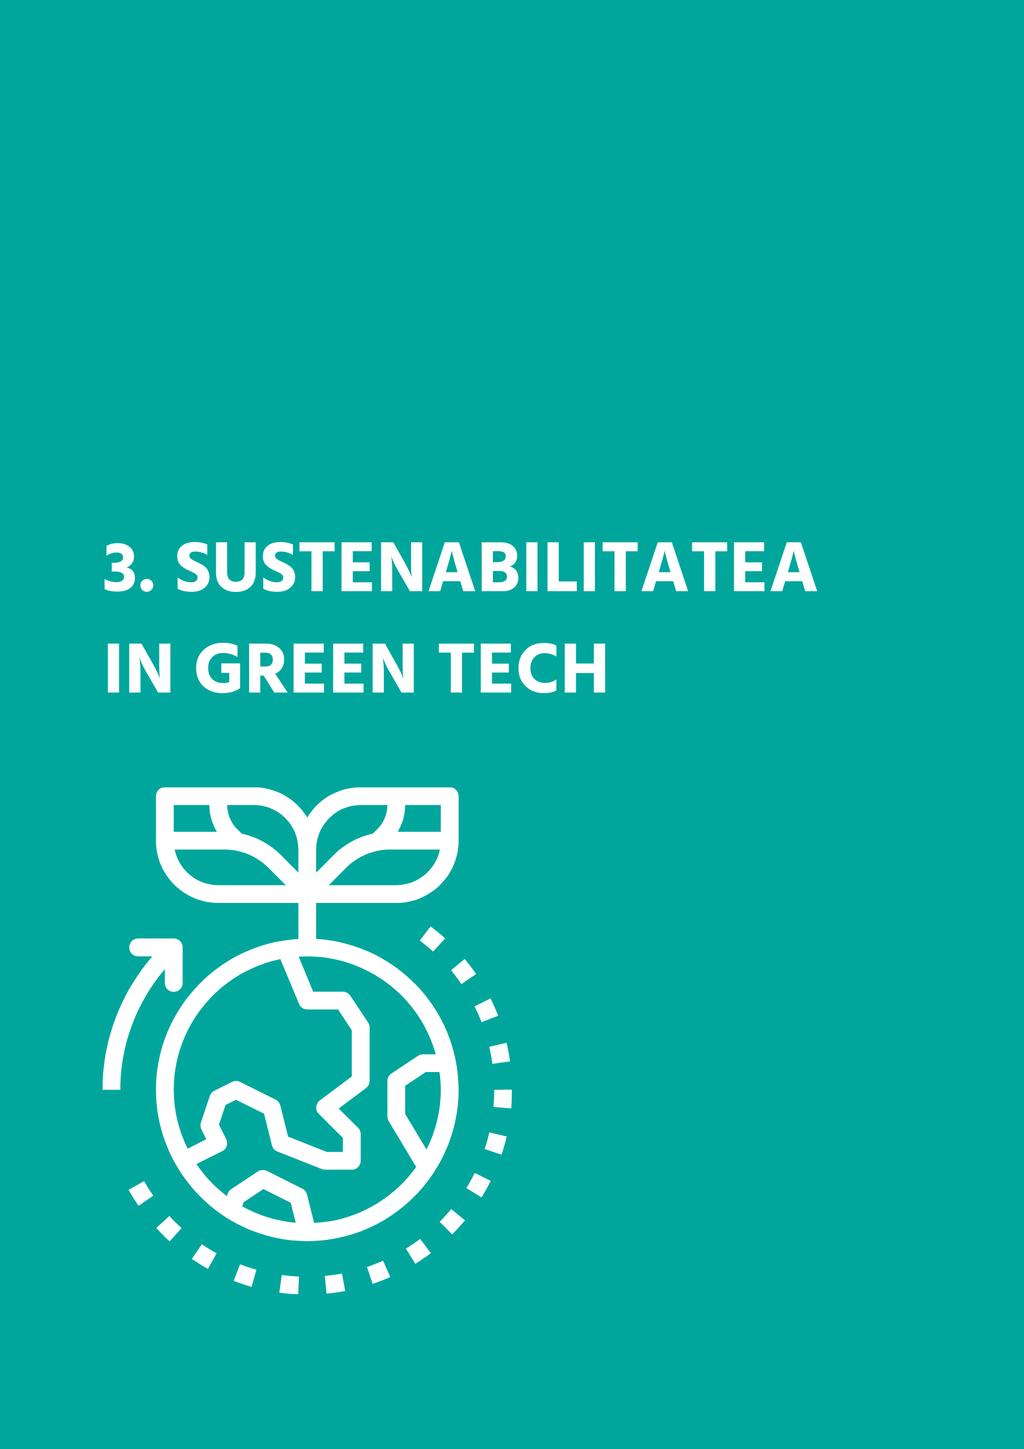 3. Performanța Green Tech în